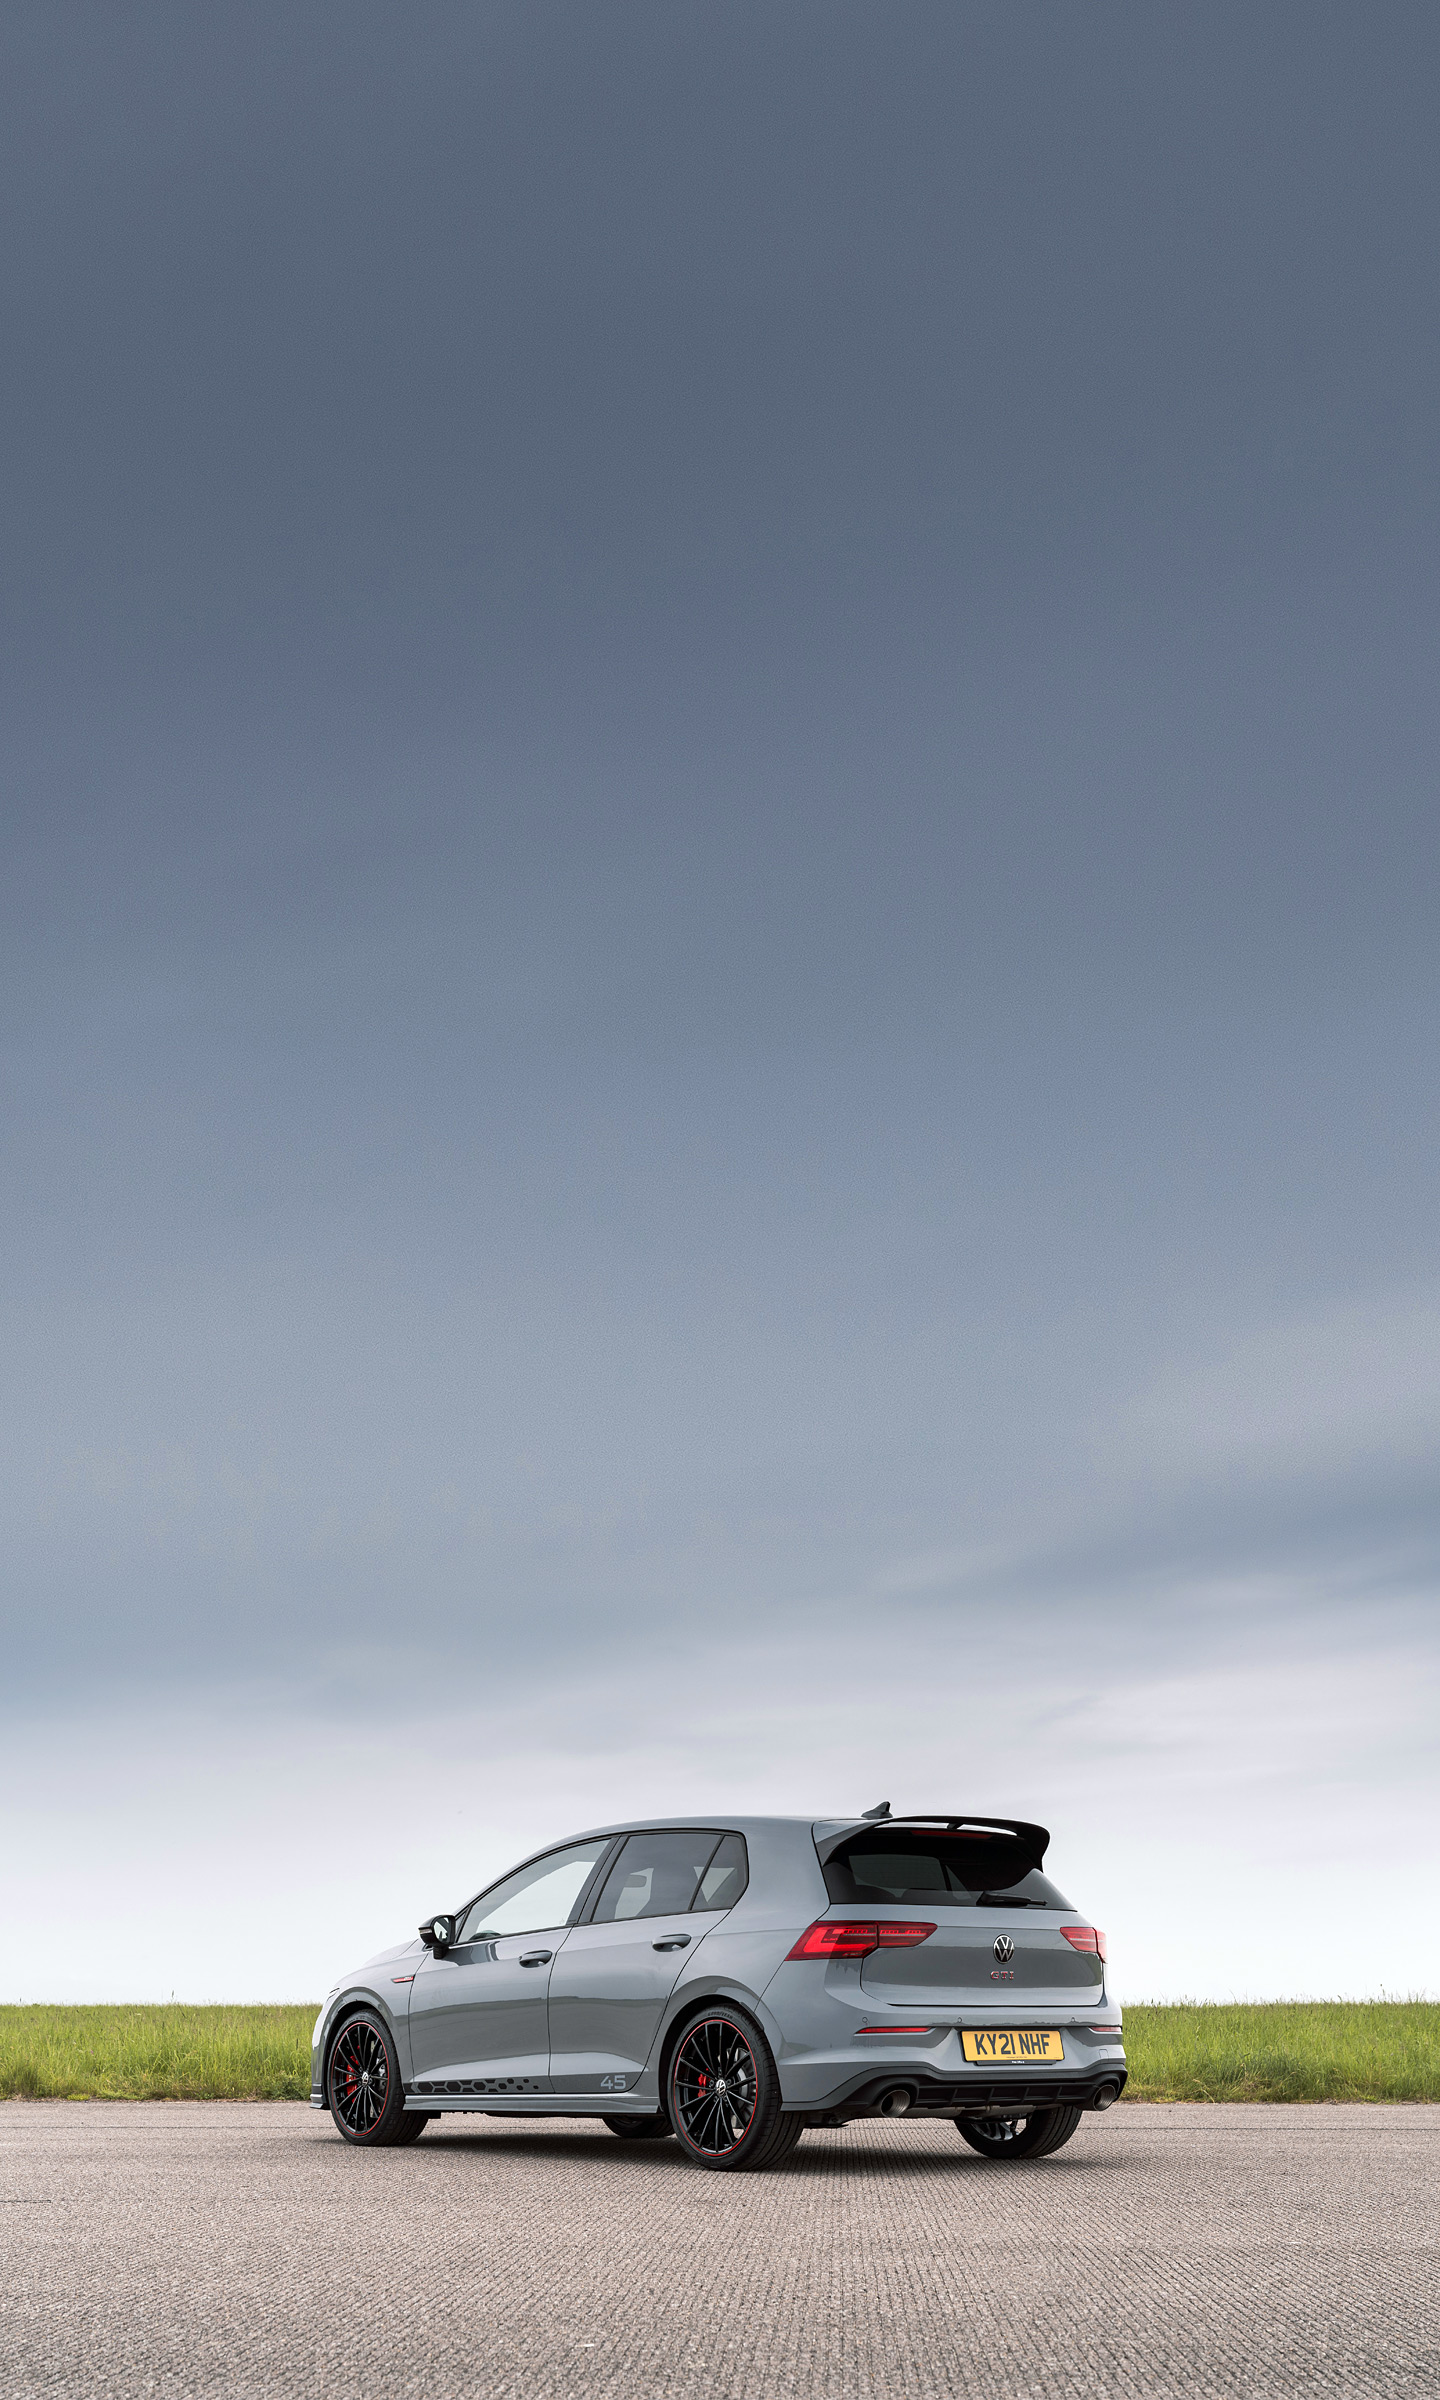  2021 Volkswagen Golf GTI Clubsport 45 Wallpaper.